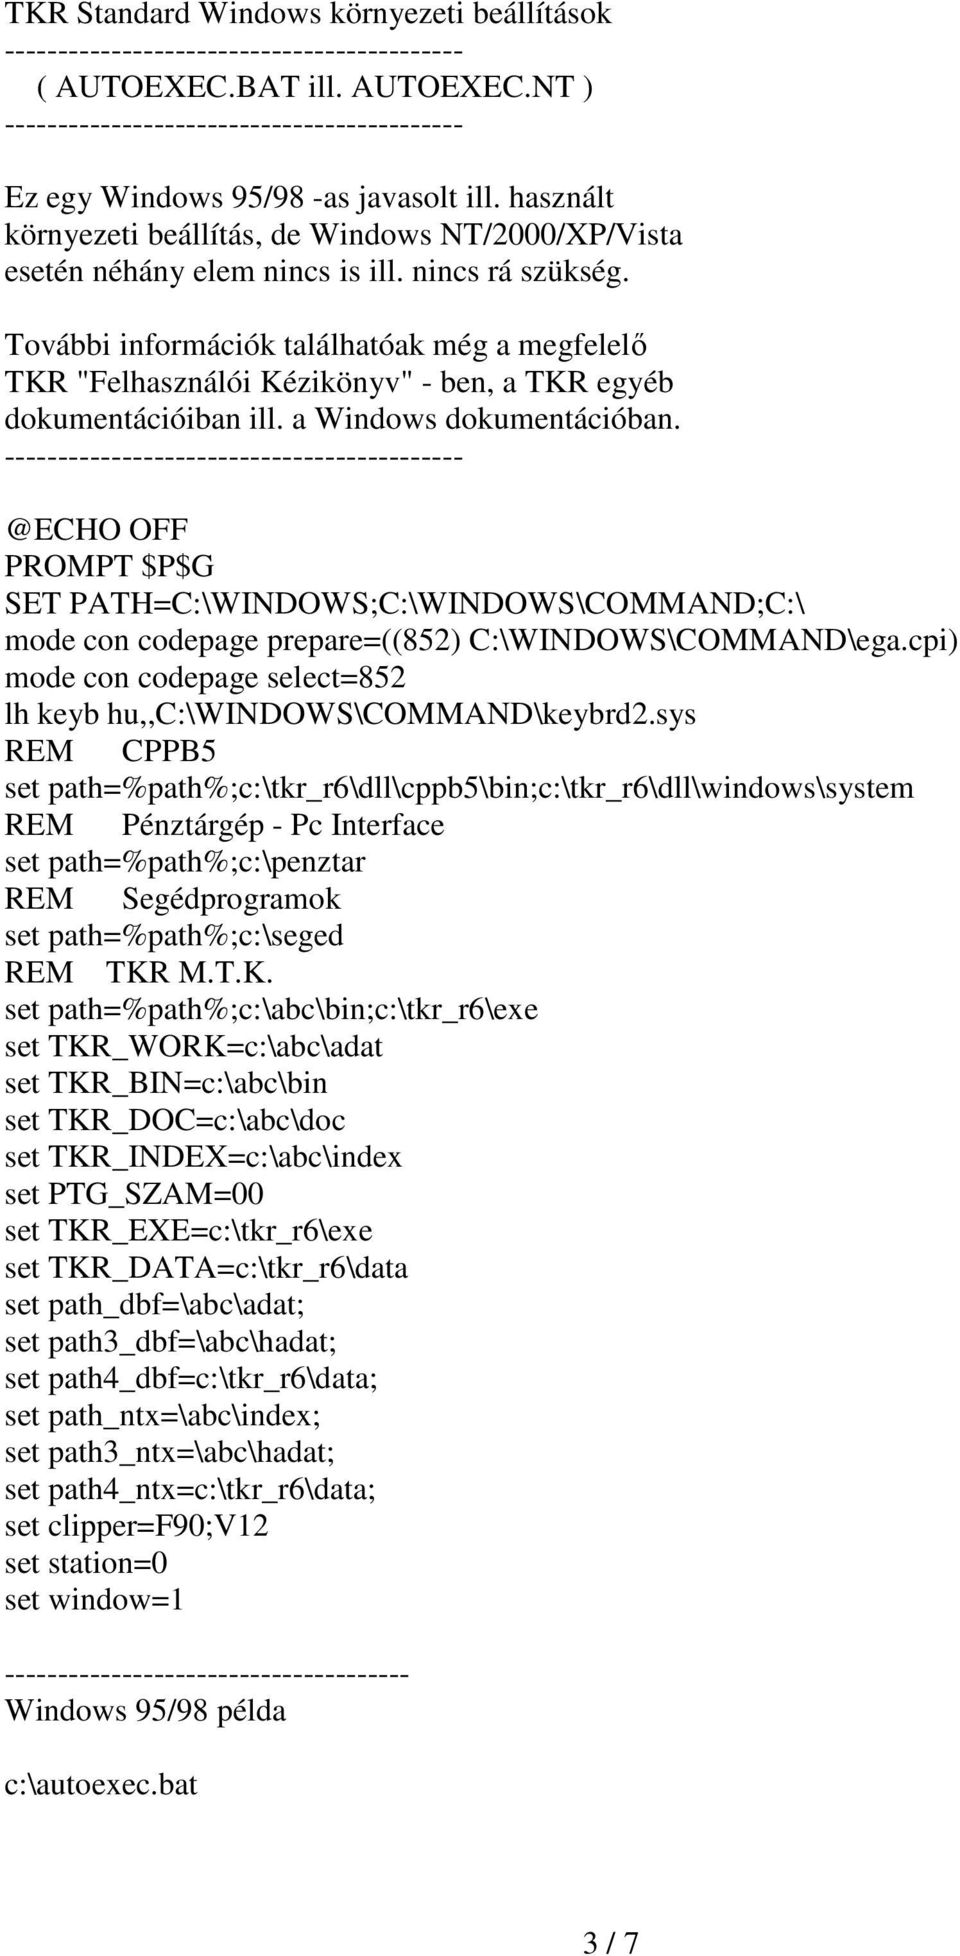 További információk találhatóak még a megfelelı TKR "Felhasználói Kézikönyv" - ben, a TKR egyéb dokumentációiban ill. a Windows dokumentációban.